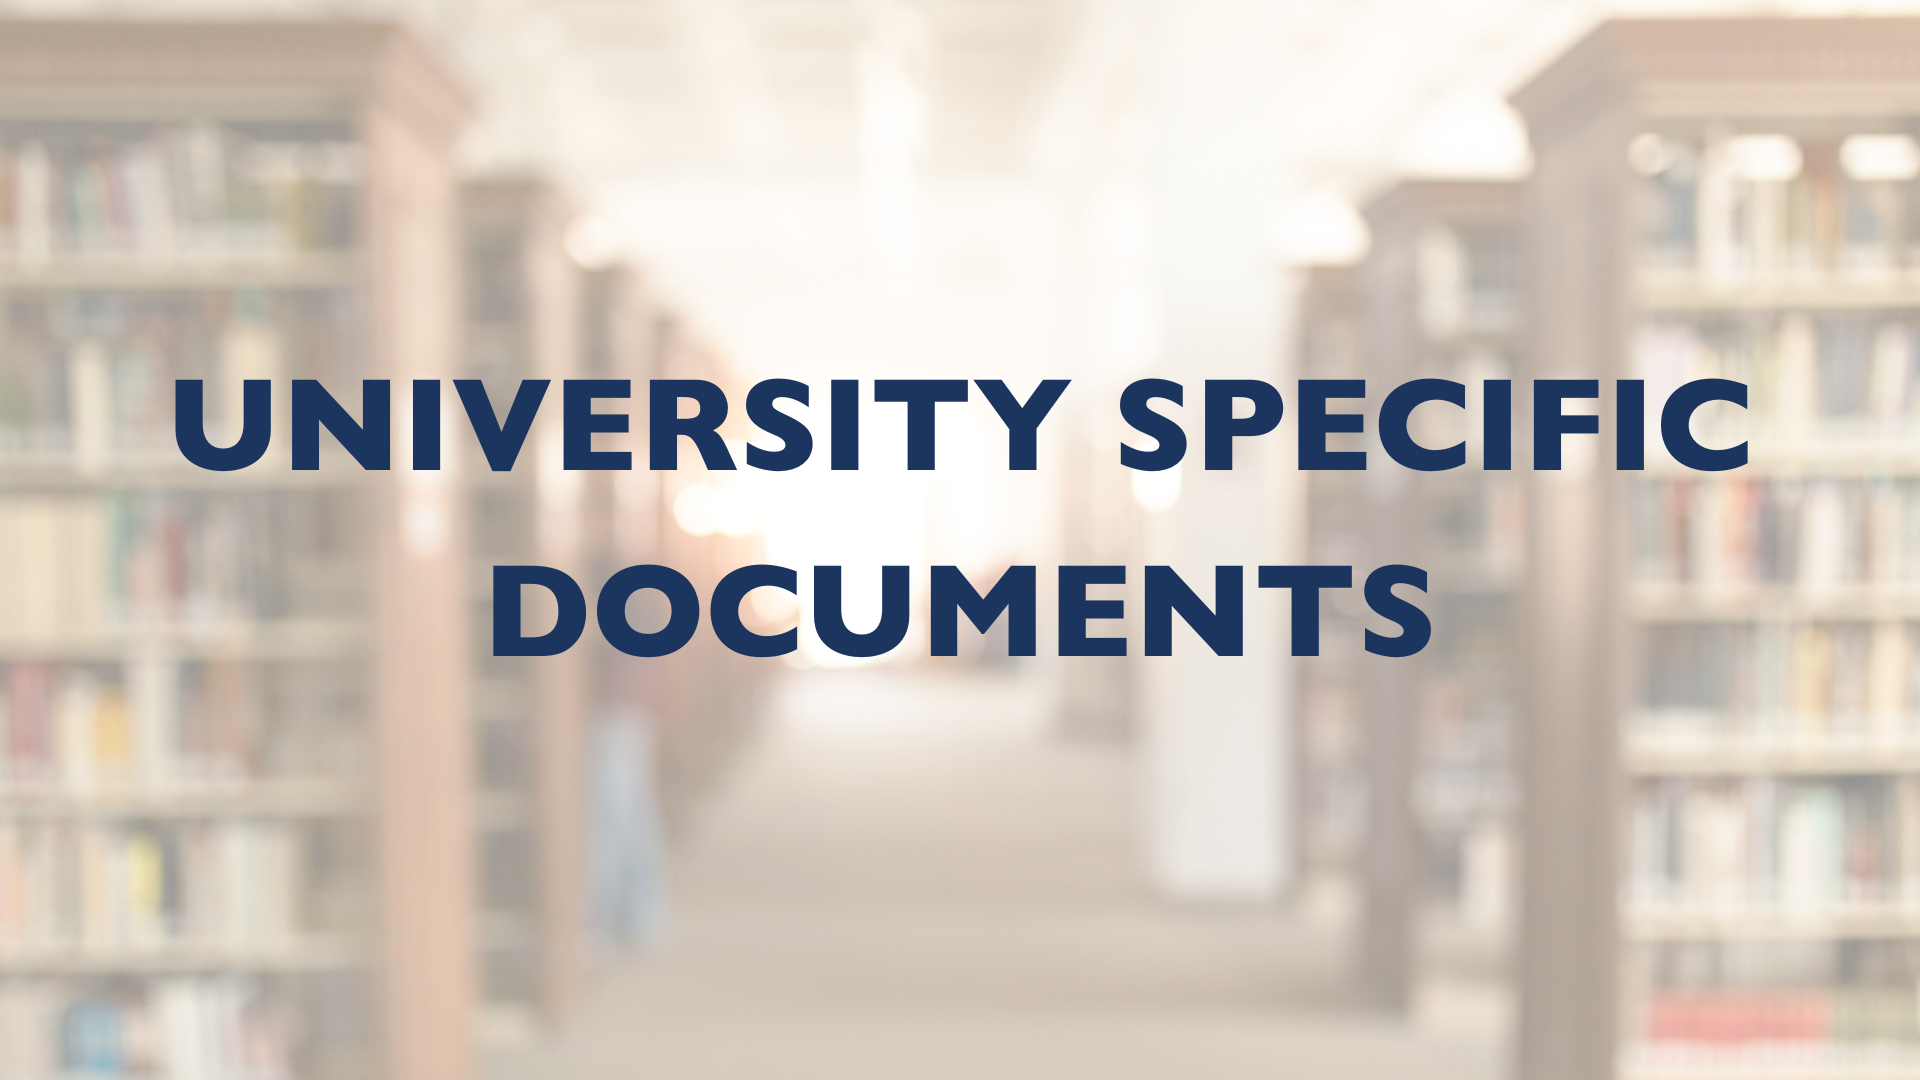 University Specific documents